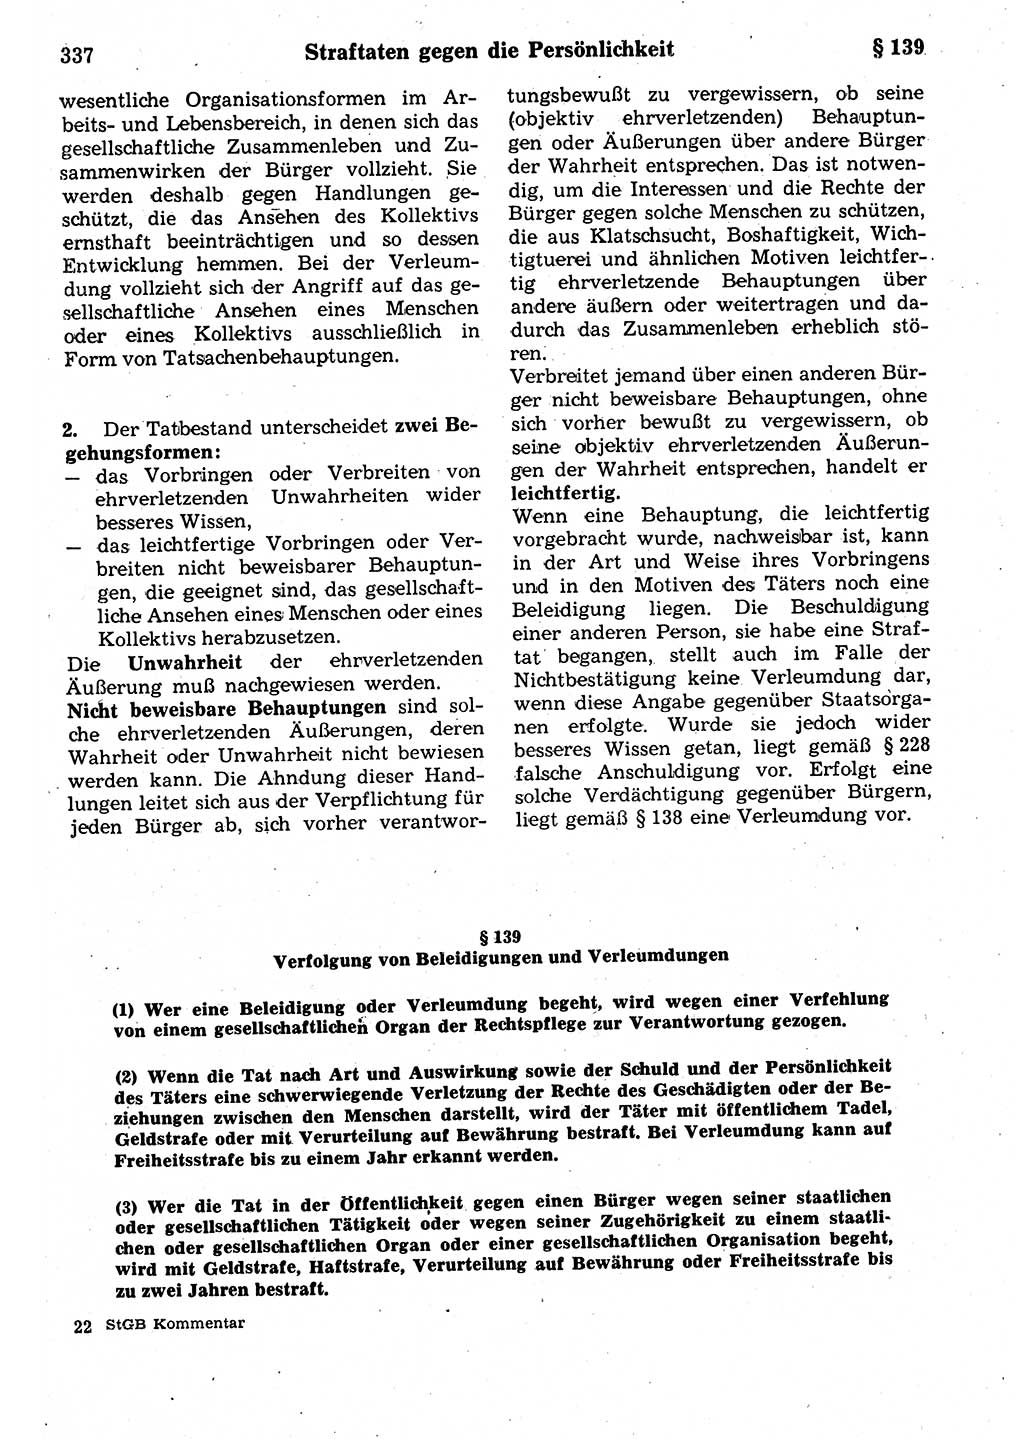 Strafrecht der Deutschen Demokratischen Republik (DDR), Kommentar zum Strafgesetzbuch (StGB) 1987, Seite 337 (Strafr. DDR Komm. StGB 1987, S. 337)